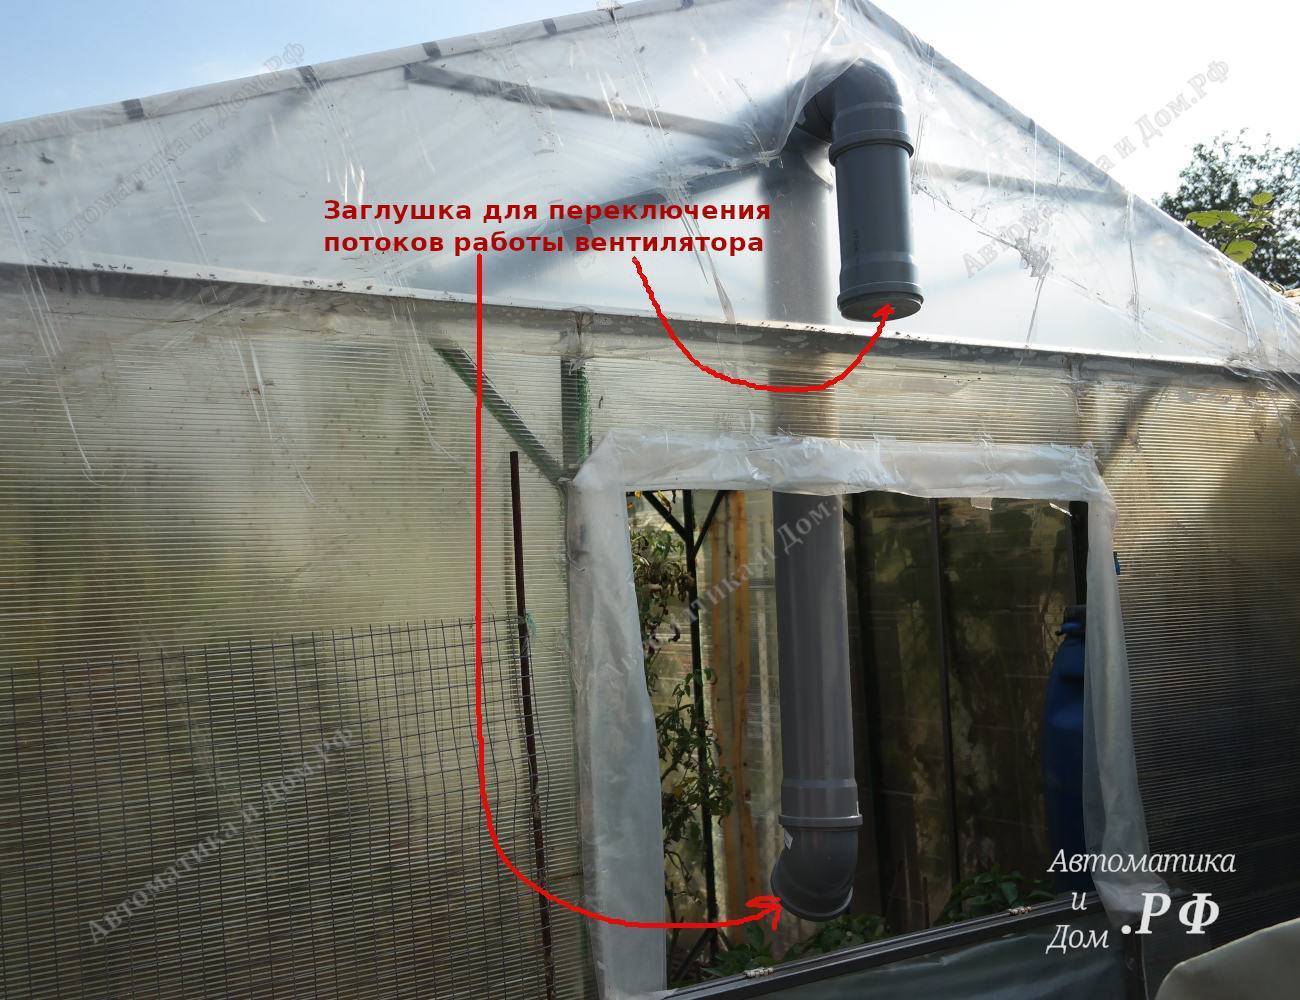 Вентиляция теплицы из поликарбоната своими руками - строительный журнал palitrabazar.ru